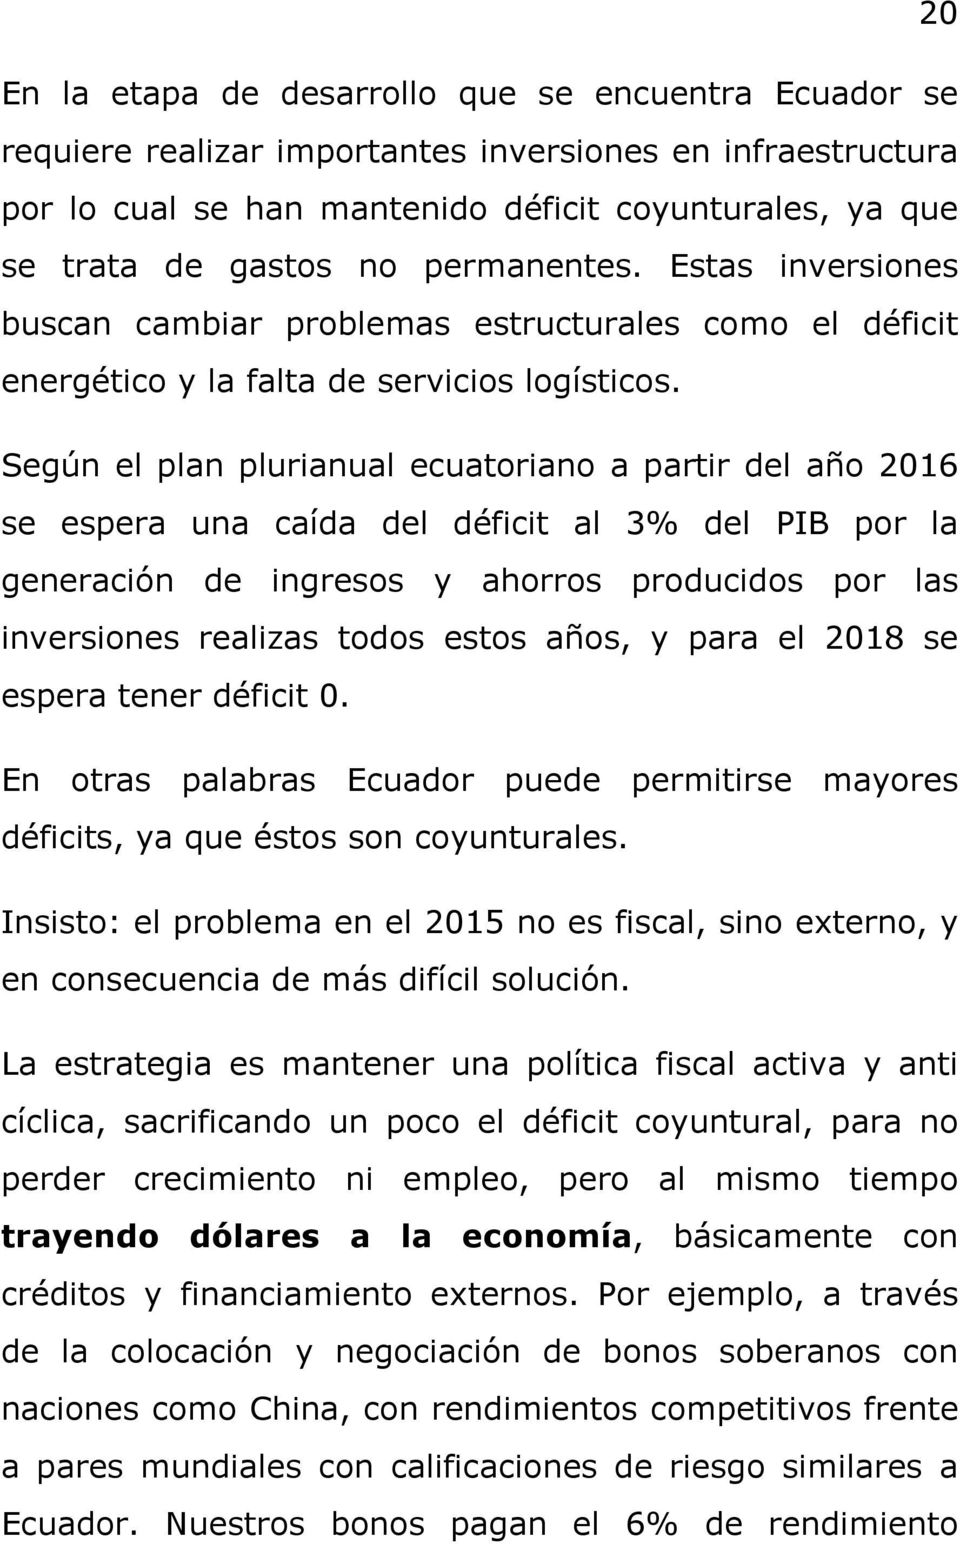 Según el plan plurianual ecuatoriano a partir del año 2016 se espera una caída del déficit al 3% del PIB por la generación de ingresos y ahorros producidos por las inversiones realizas todos estos